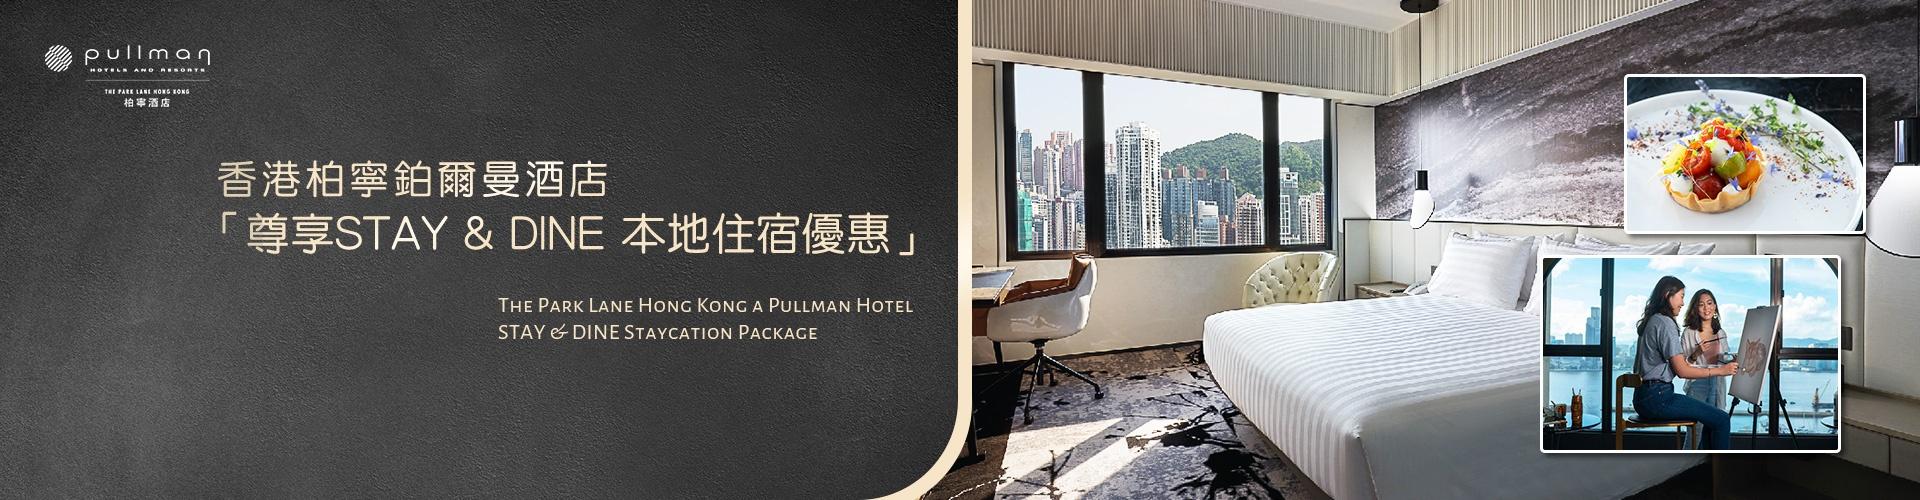 香港柏寧鉑爾曼酒店 The Park Lane Hong Kong a Pullman Hotel